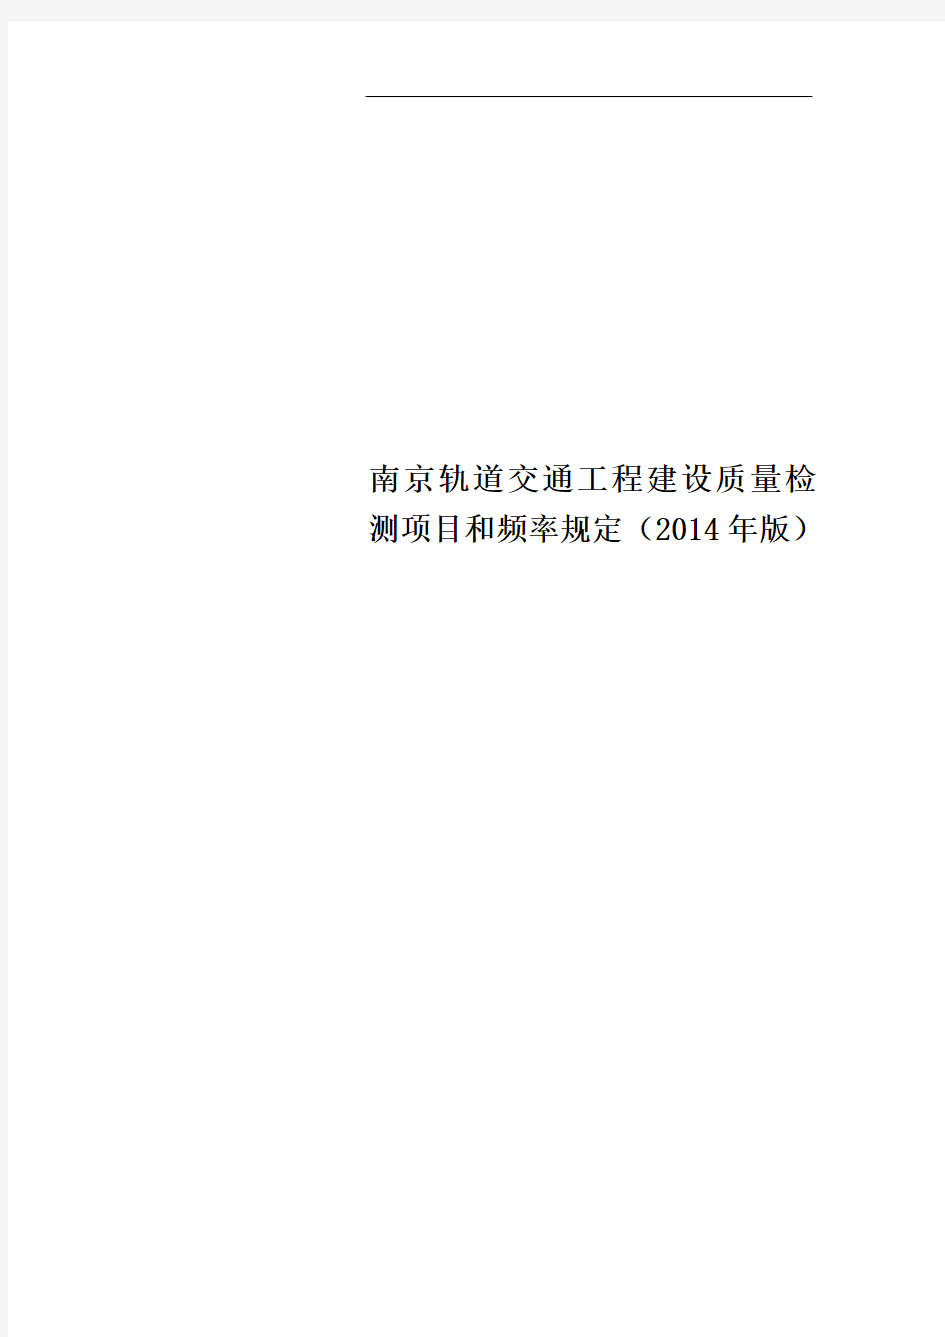 南京轨道交通工程建设质量检测项目和频率规定(2014年版)